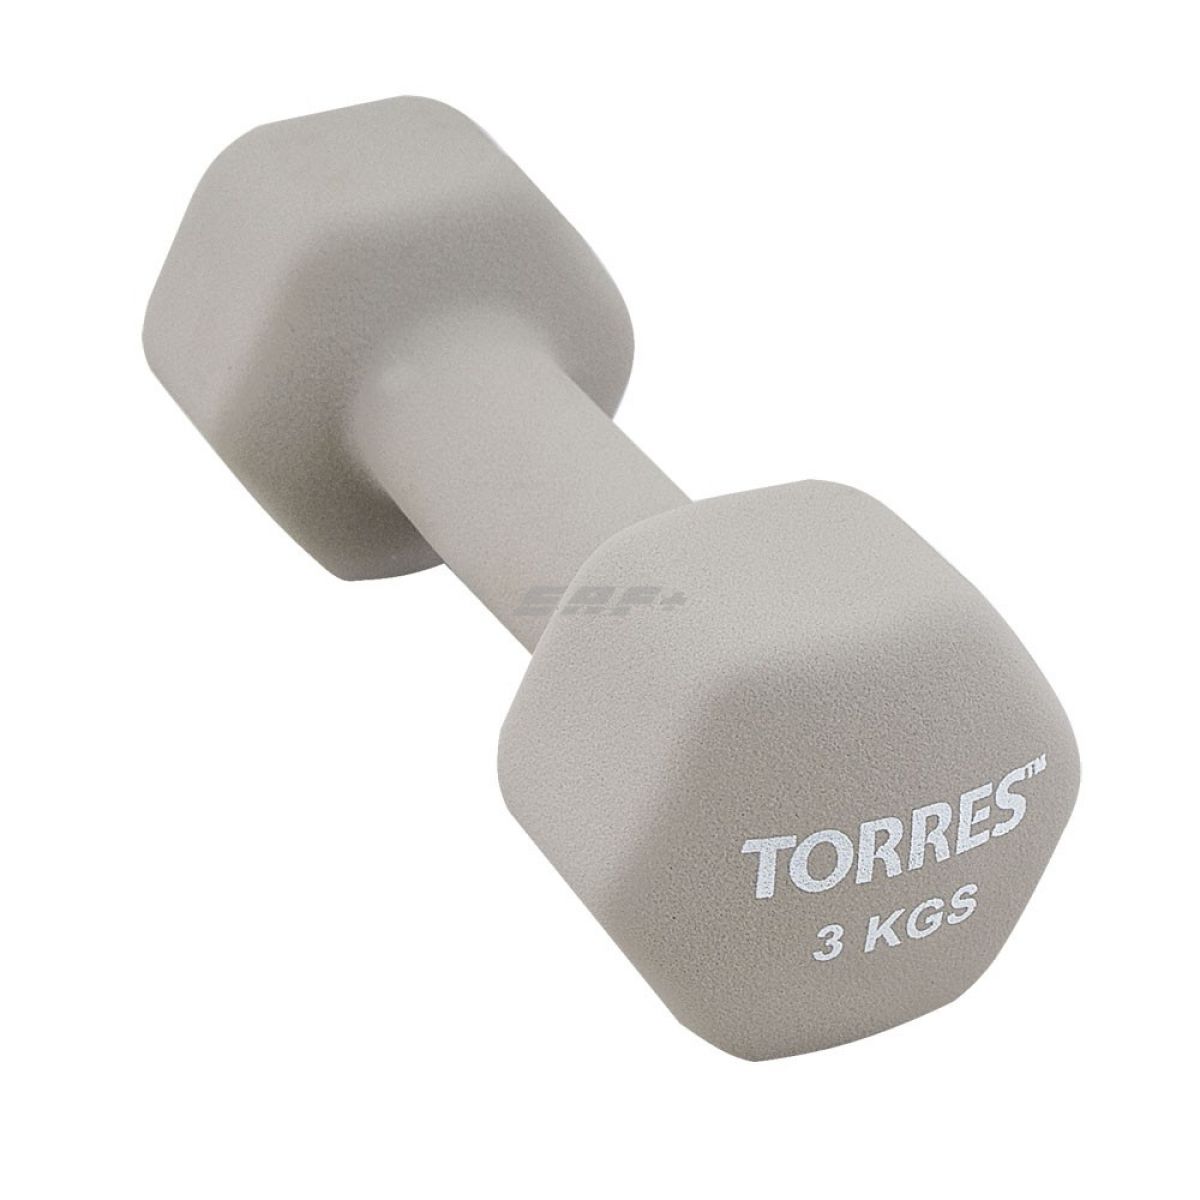  TORRES Гантель 3 кг